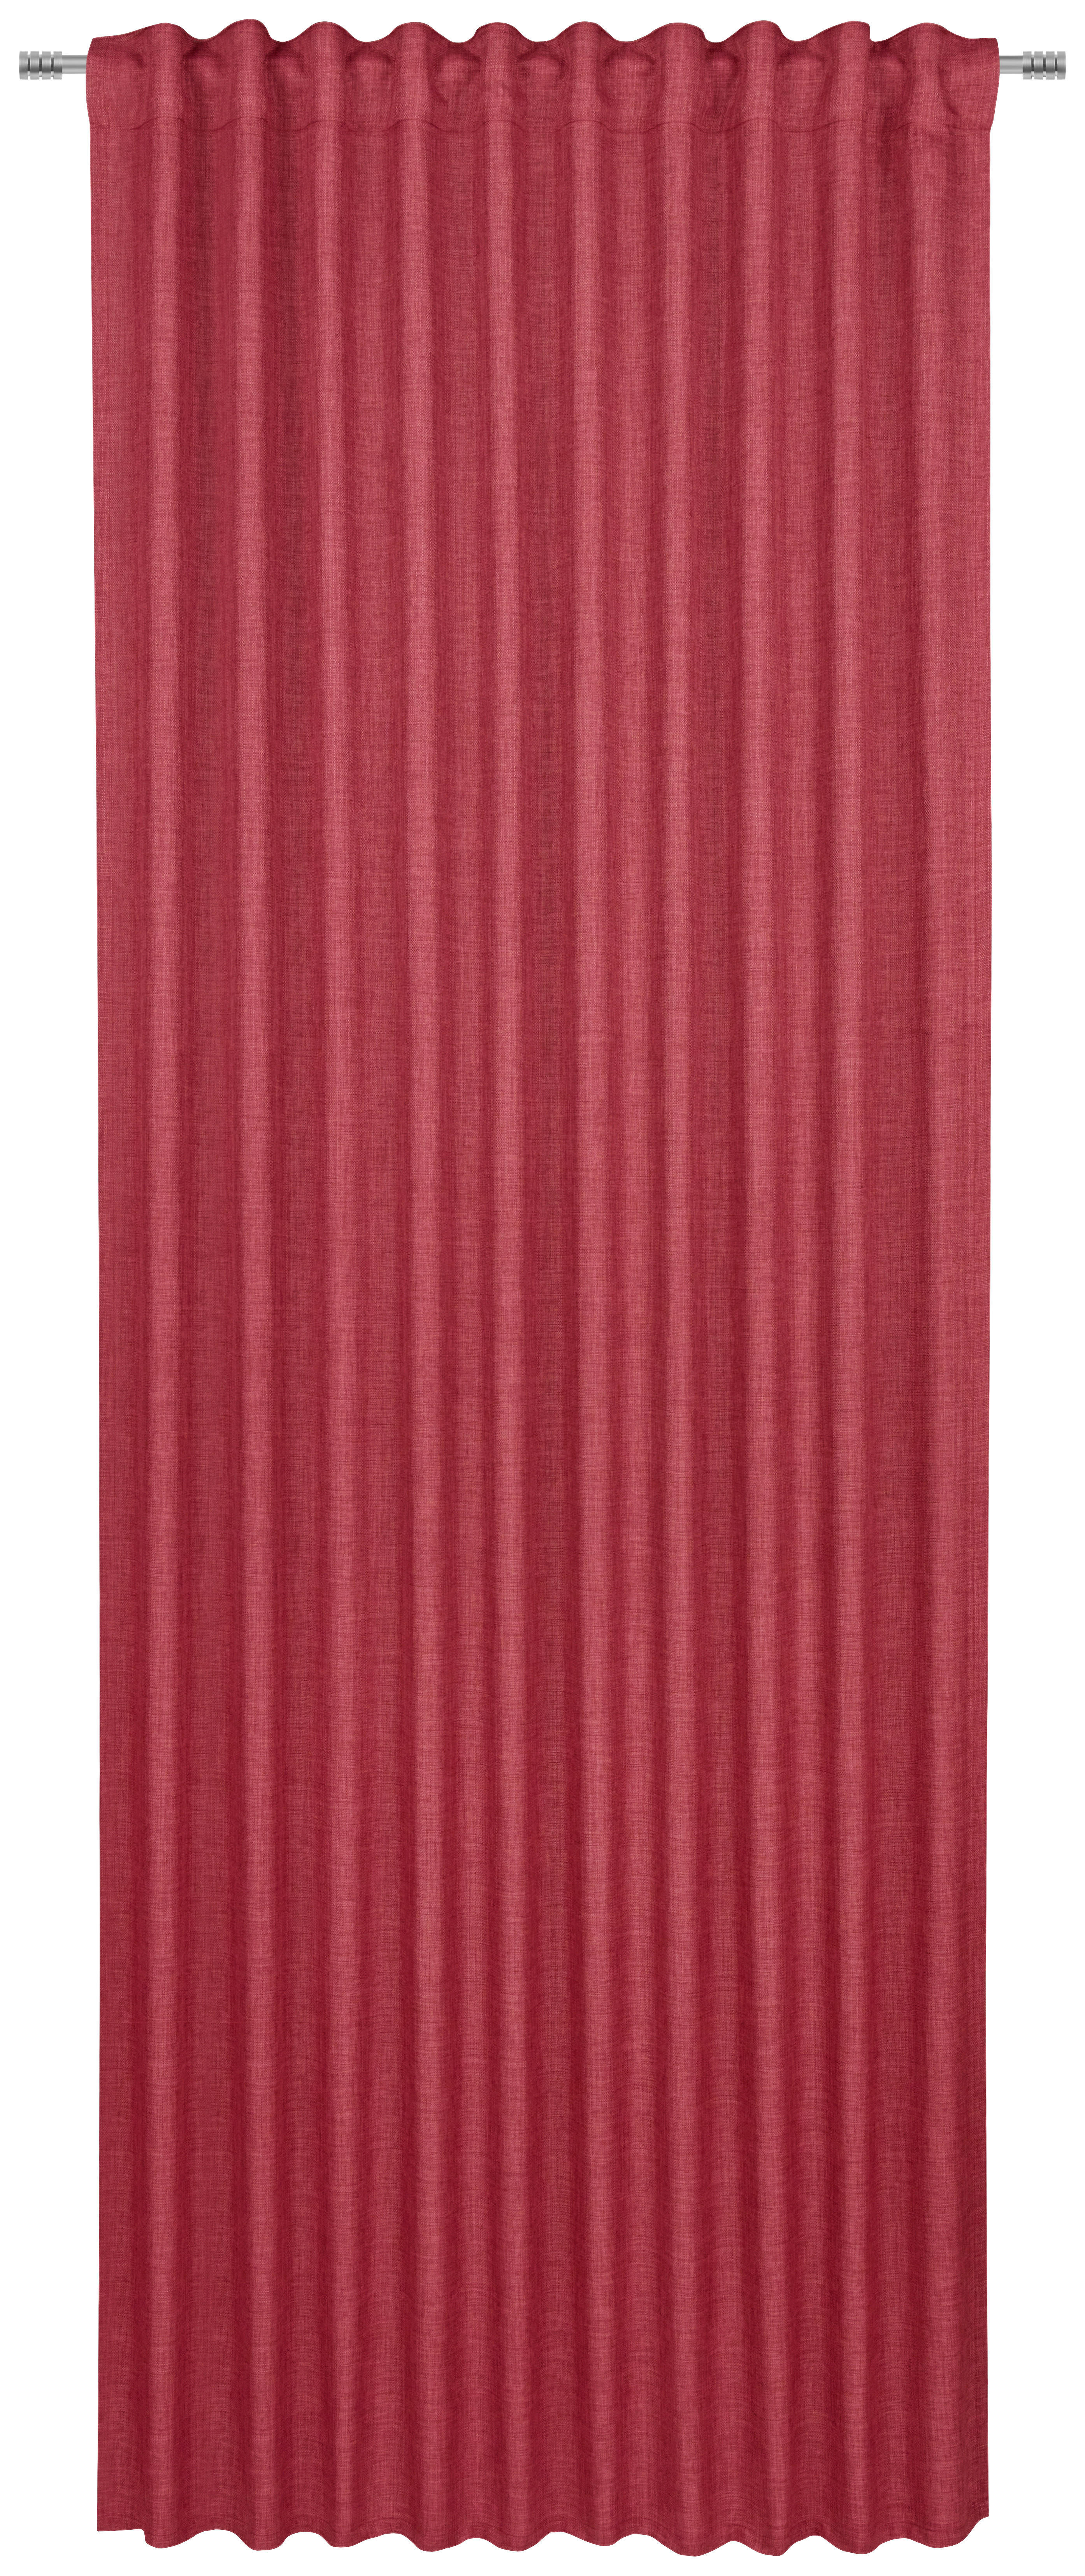 KÉSZFÜGGÖNY Részben fényzáró  - Piros, Basics, Textil (140/245cm) - Boxxx